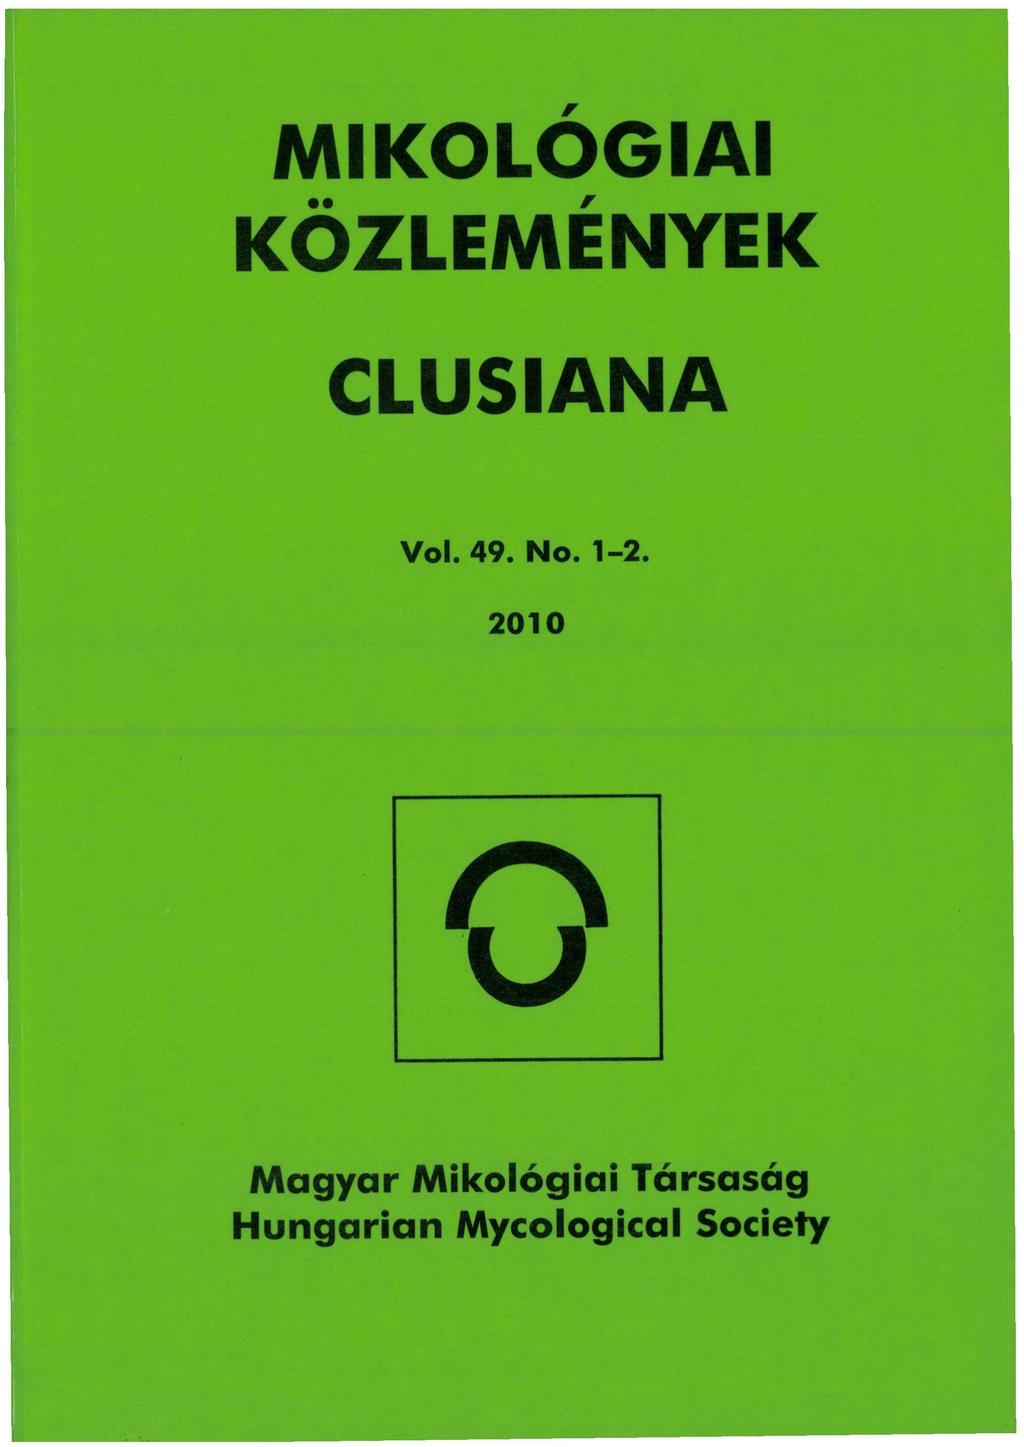 MIKOLOGIAI KÖZLEMÉNYEK CLUSIANA Vol. 49. No. 1-2.